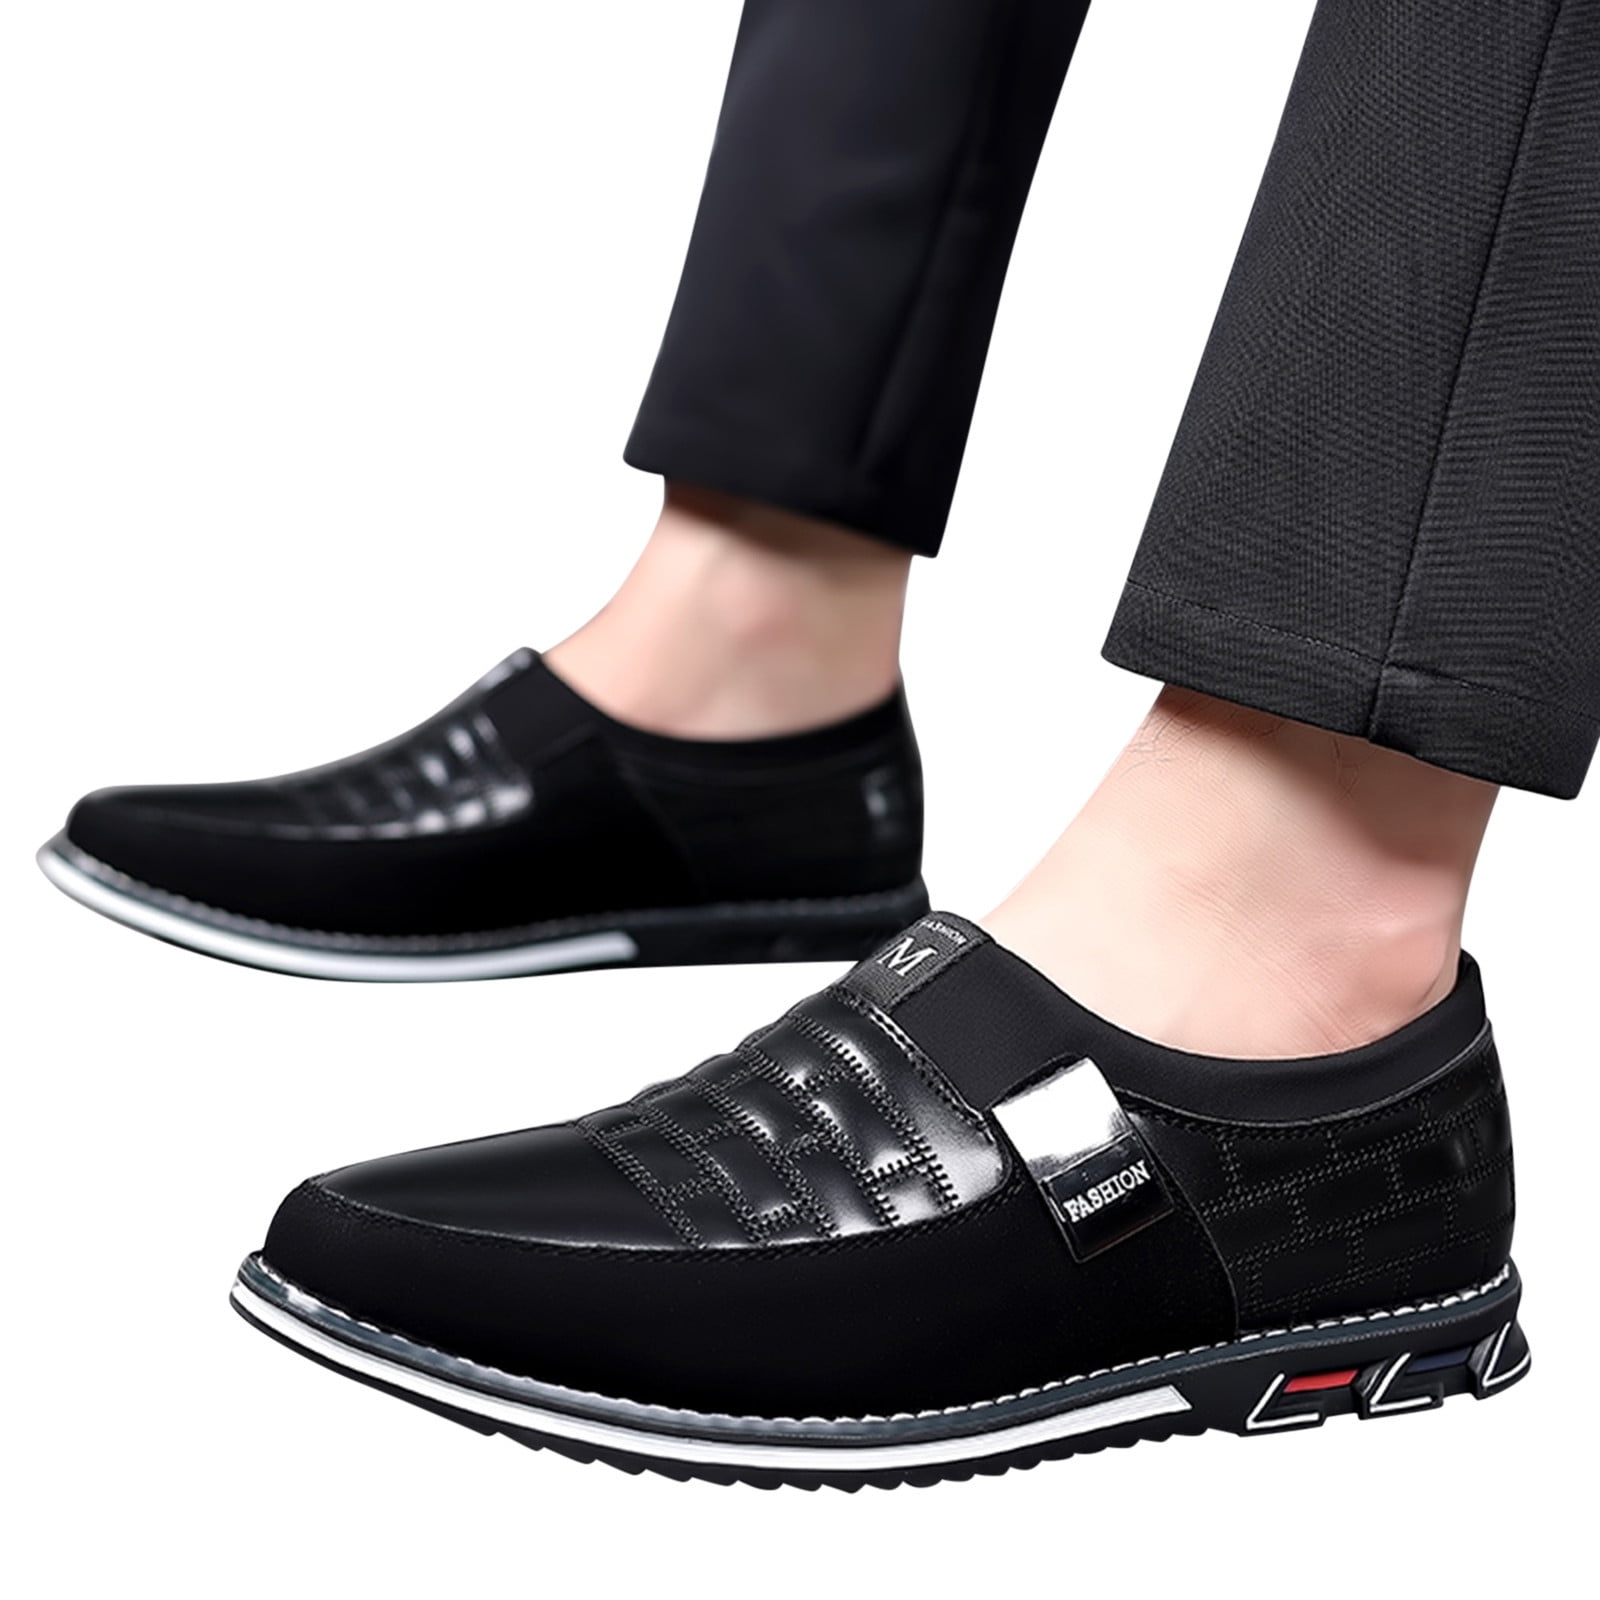 comfortable black dress shoes